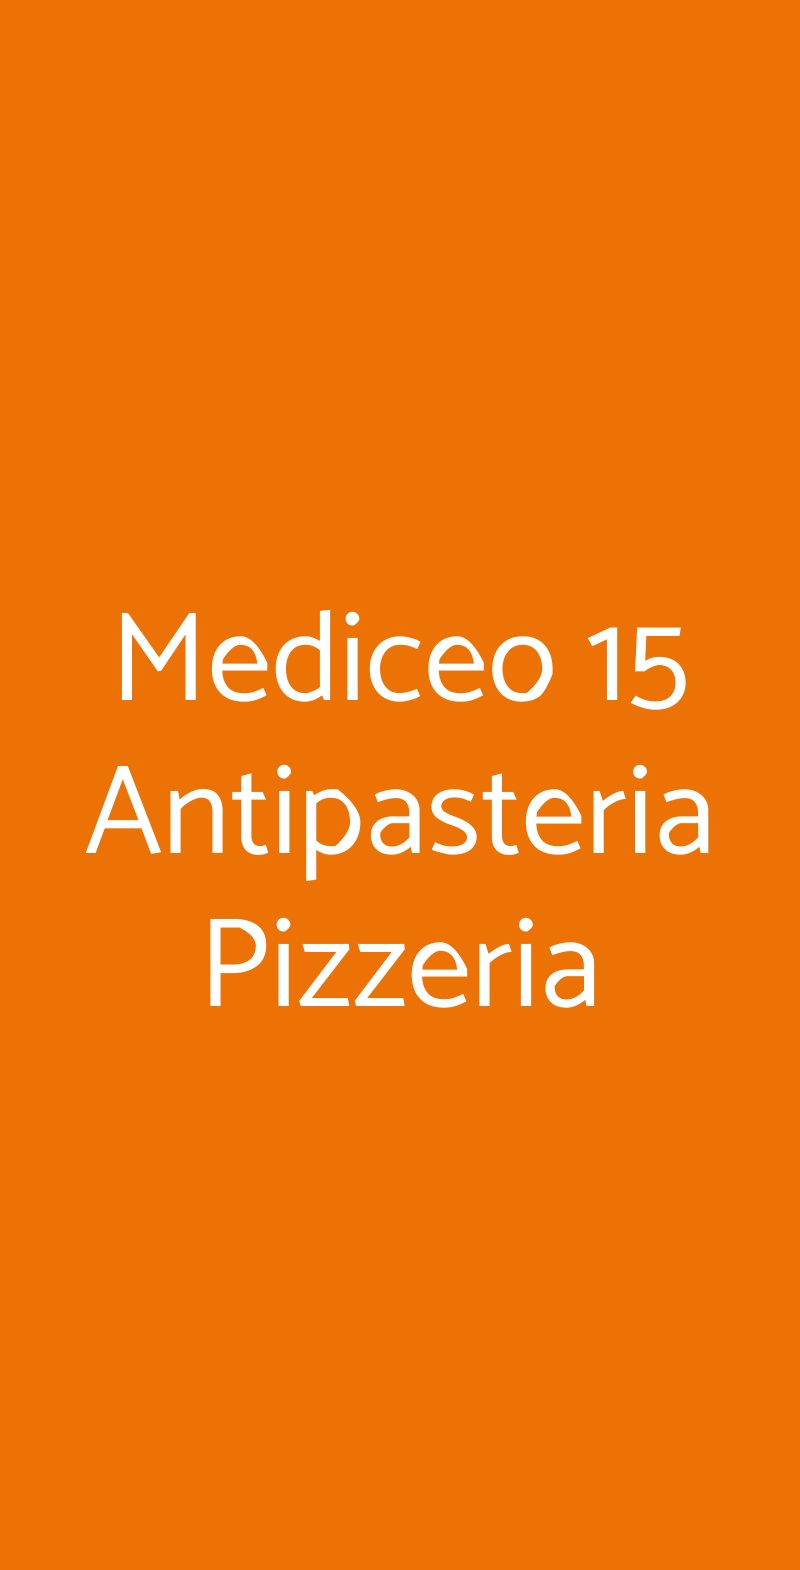 Mediceo 15 Antipasteria Pizzeria Pisa menù 1 pagina